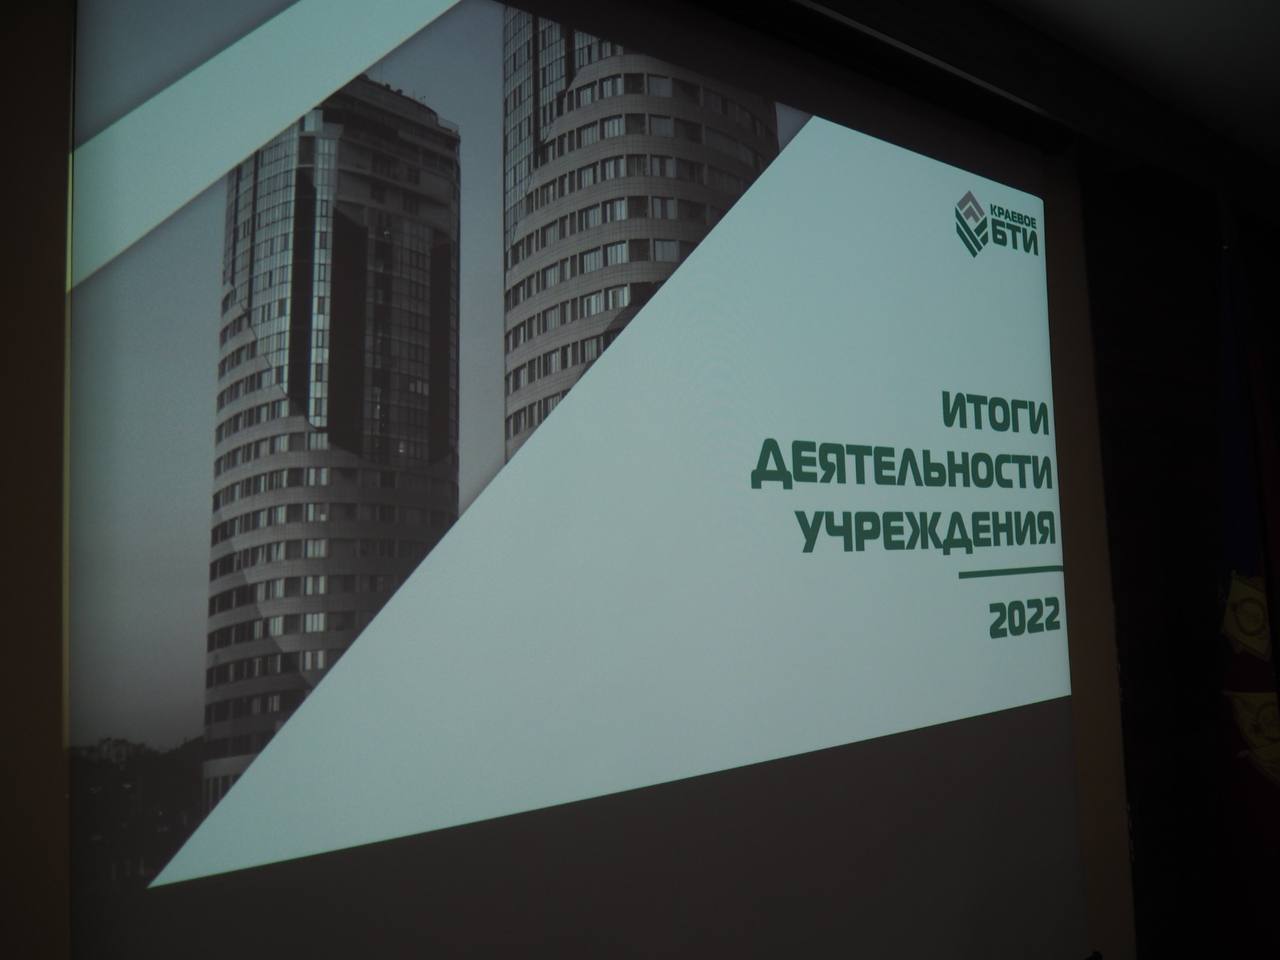 Сегодня в Краевом БТИ прошло совещание по подведению итогов деятельности Учреждения за 2022 год